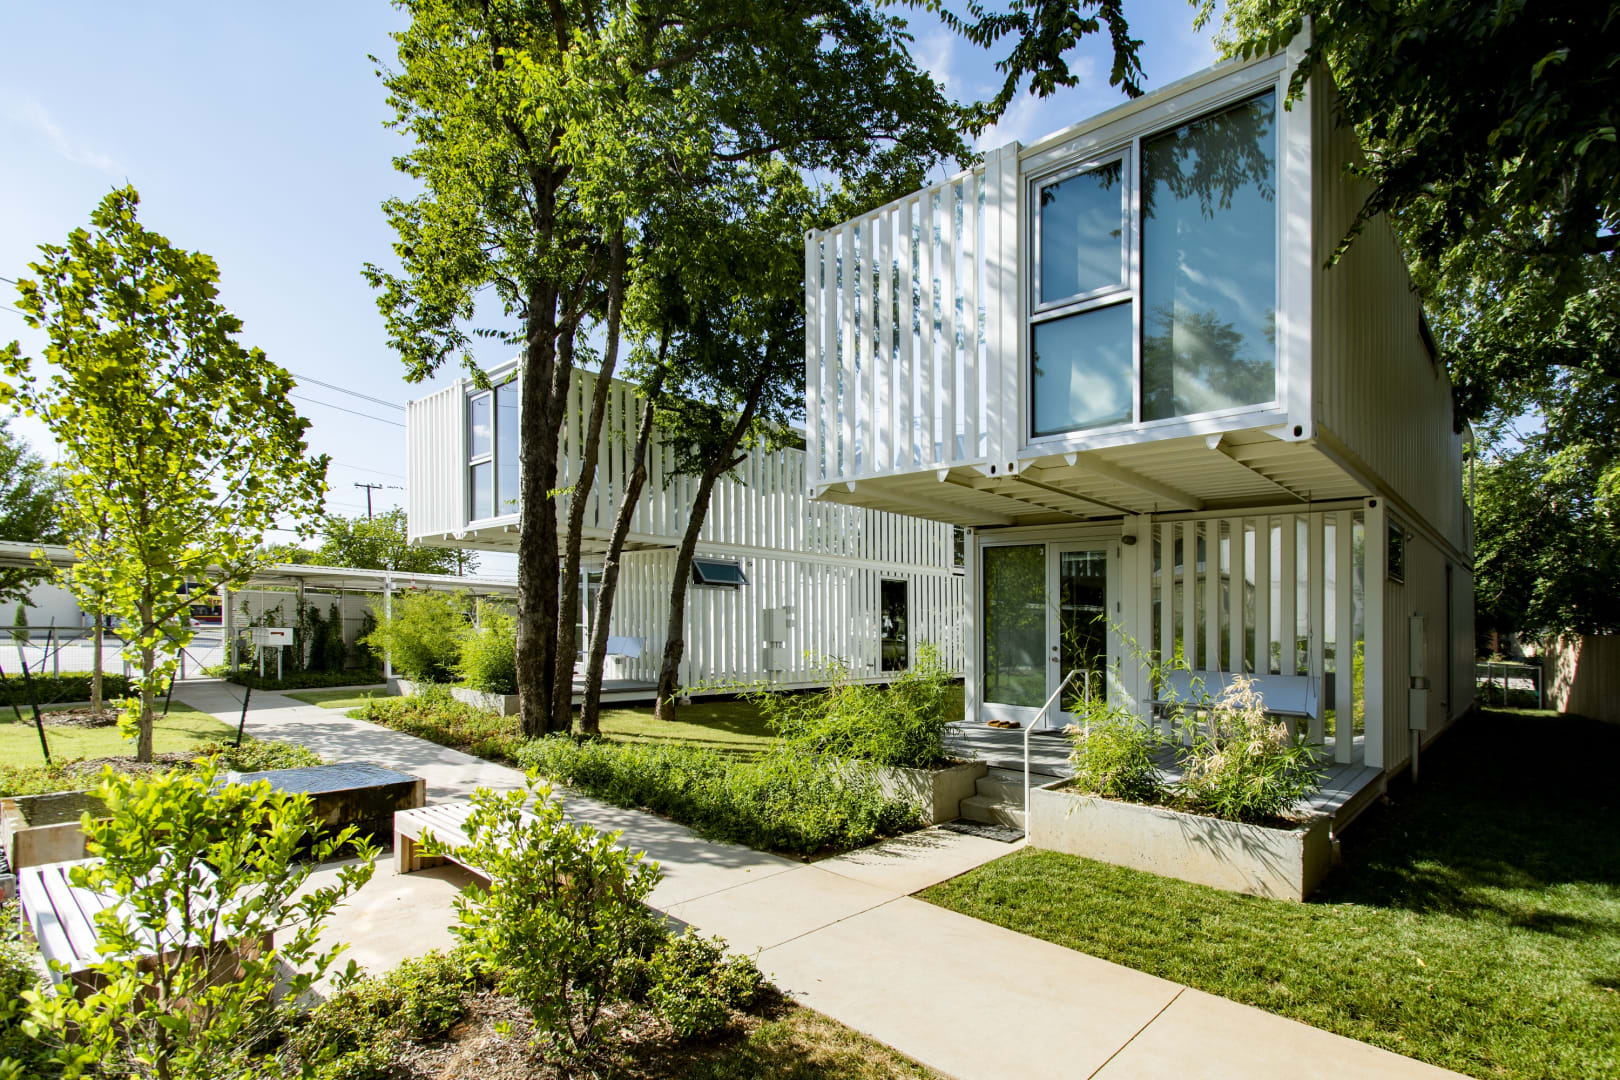 Arquitetura sustentável diminui impacto ambiental e traz bem-estar